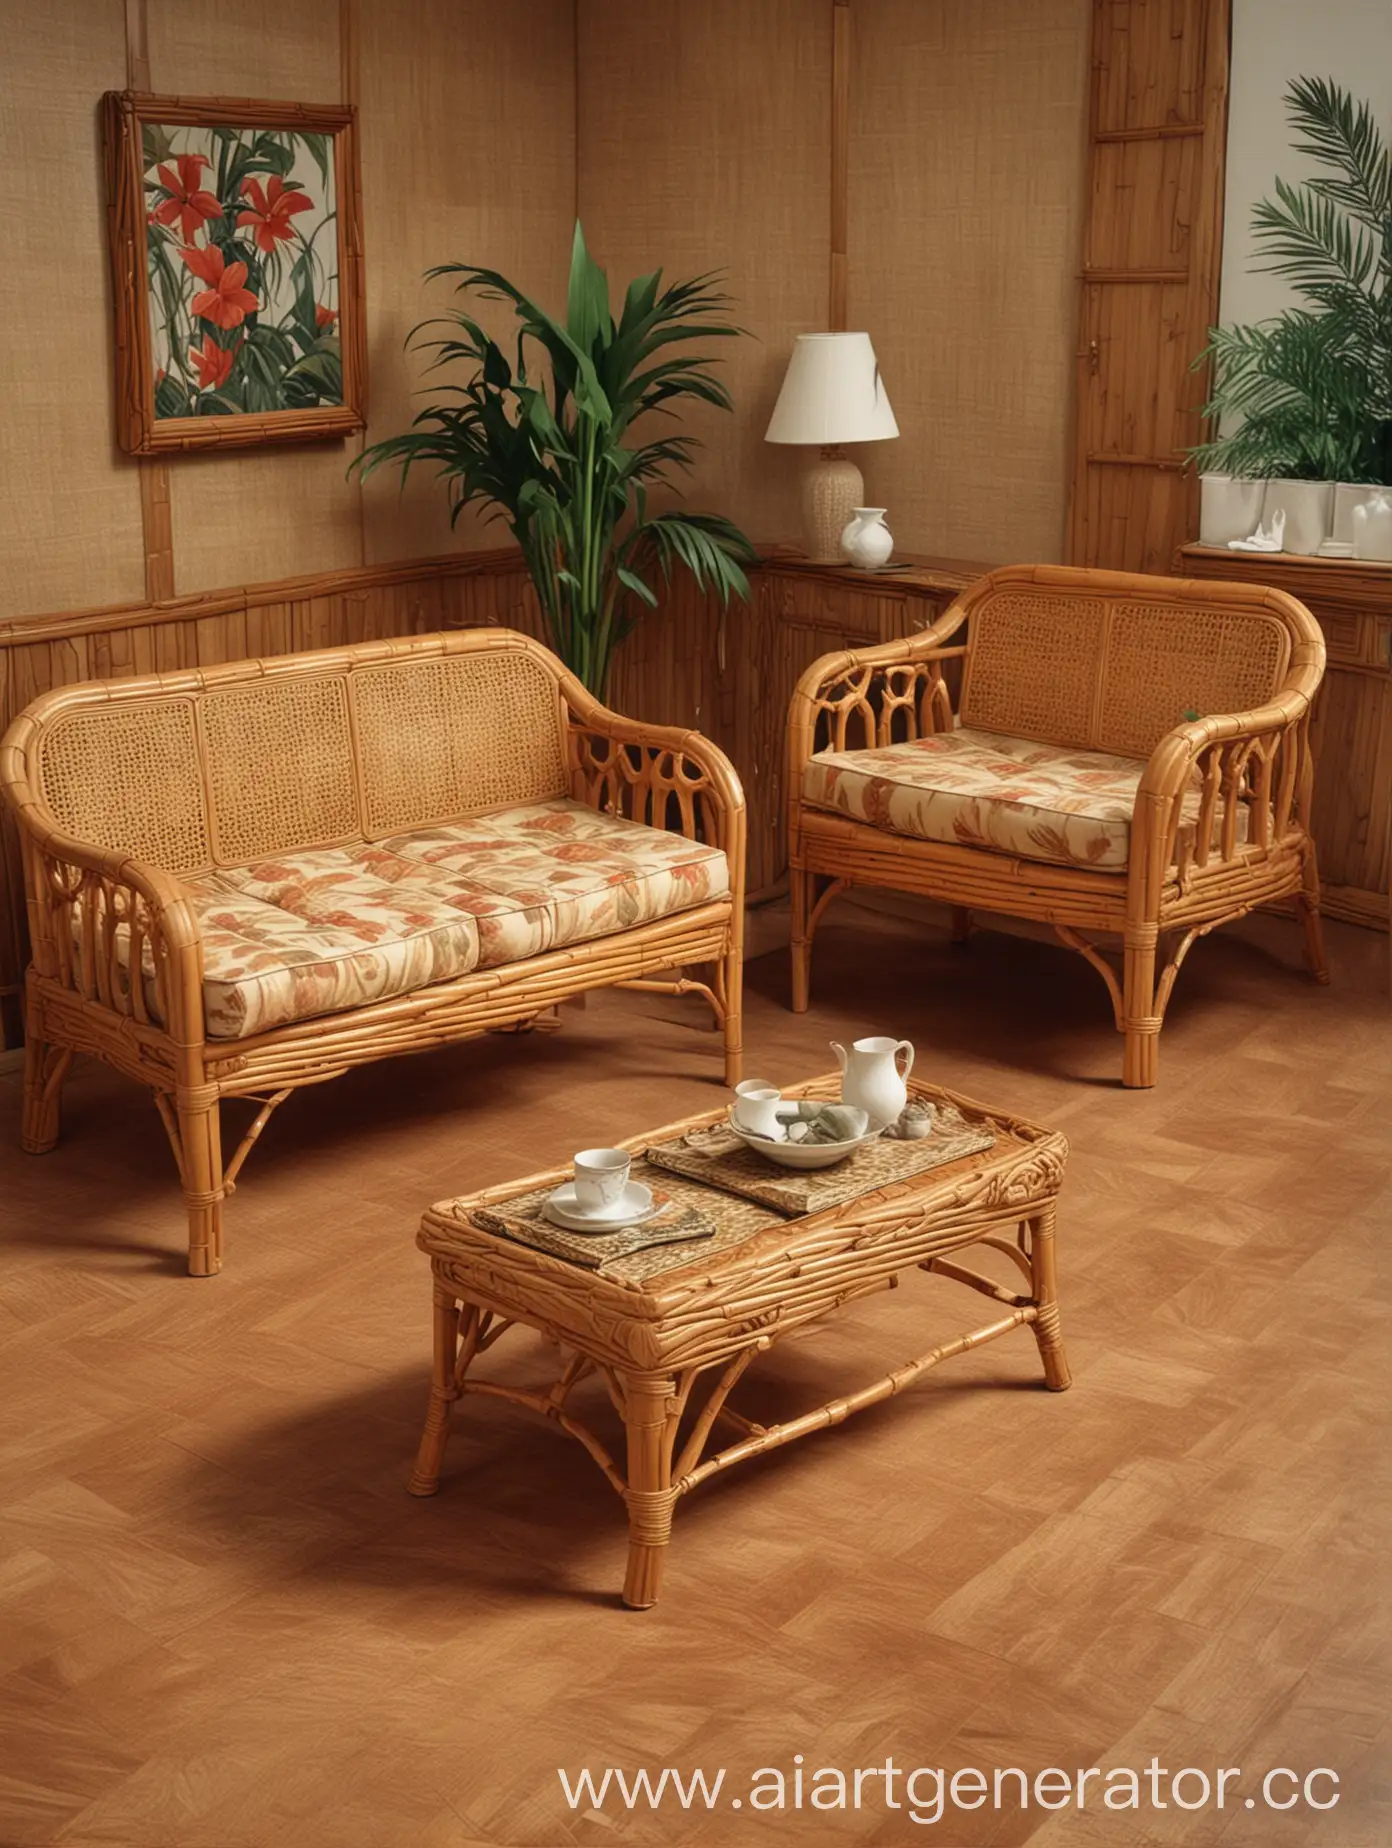 Домашние восьмидесятые: мебель из ротанга, декор из бамбука, отделка стен под дерево. фотореалистичность